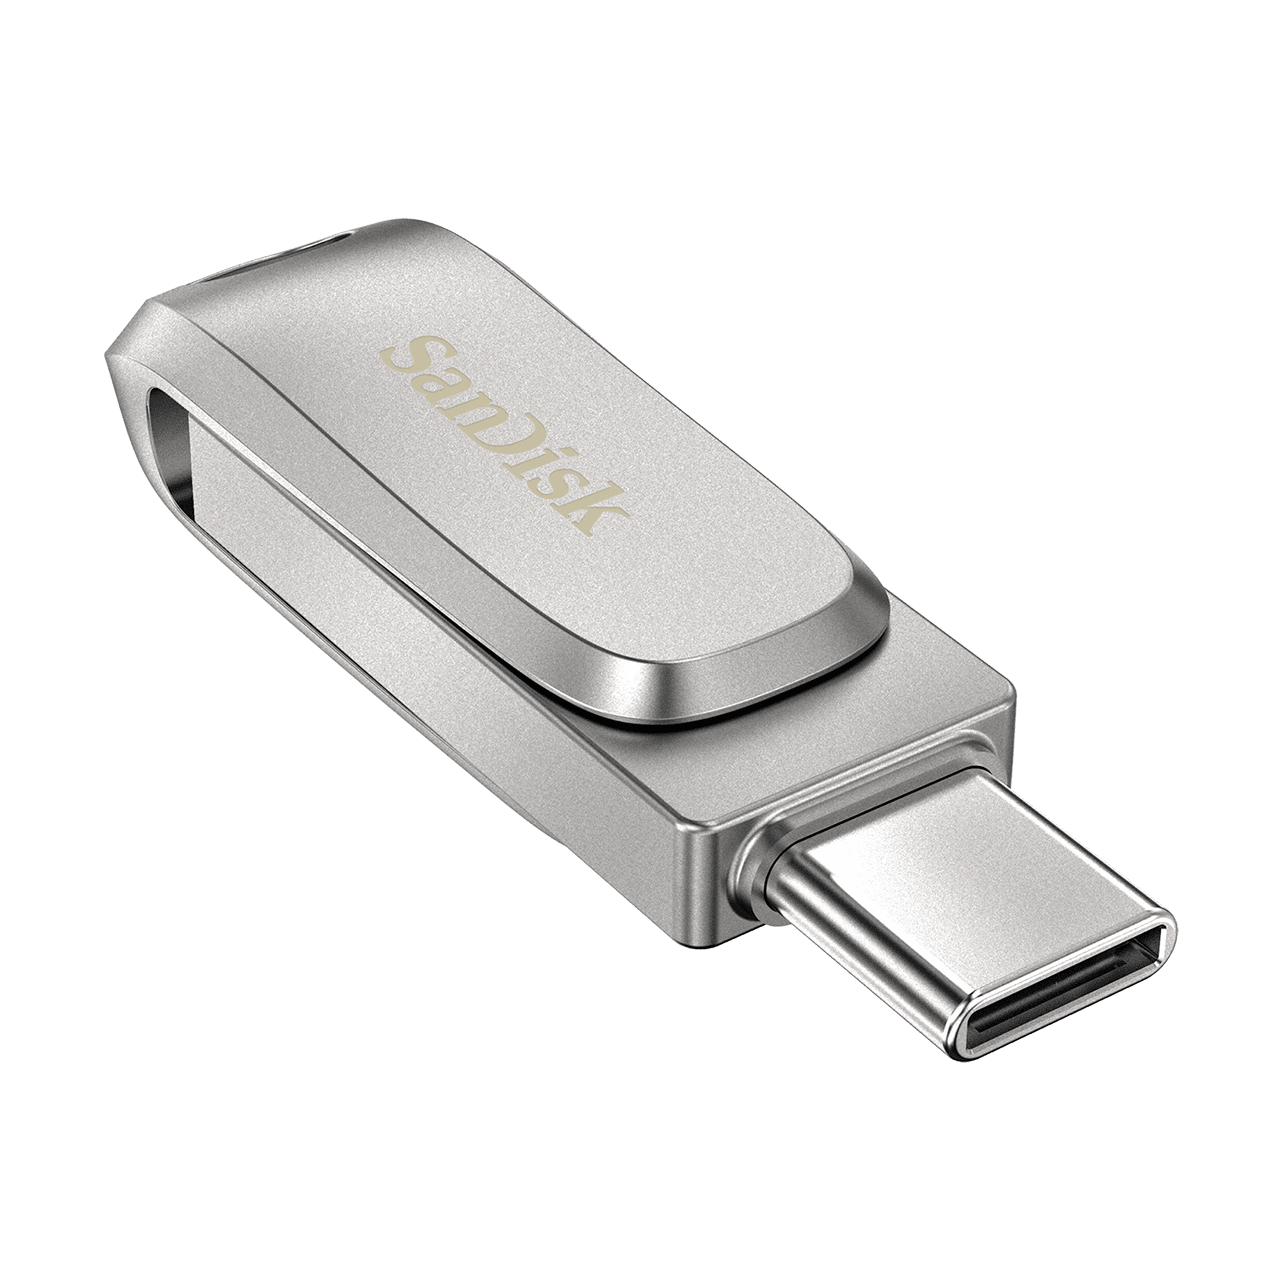 Obrázek SanDisk Ultra Dual Drive Luxe/32GB/150MBps/USB 3.1/USB-A + USB-C/Stříbrná